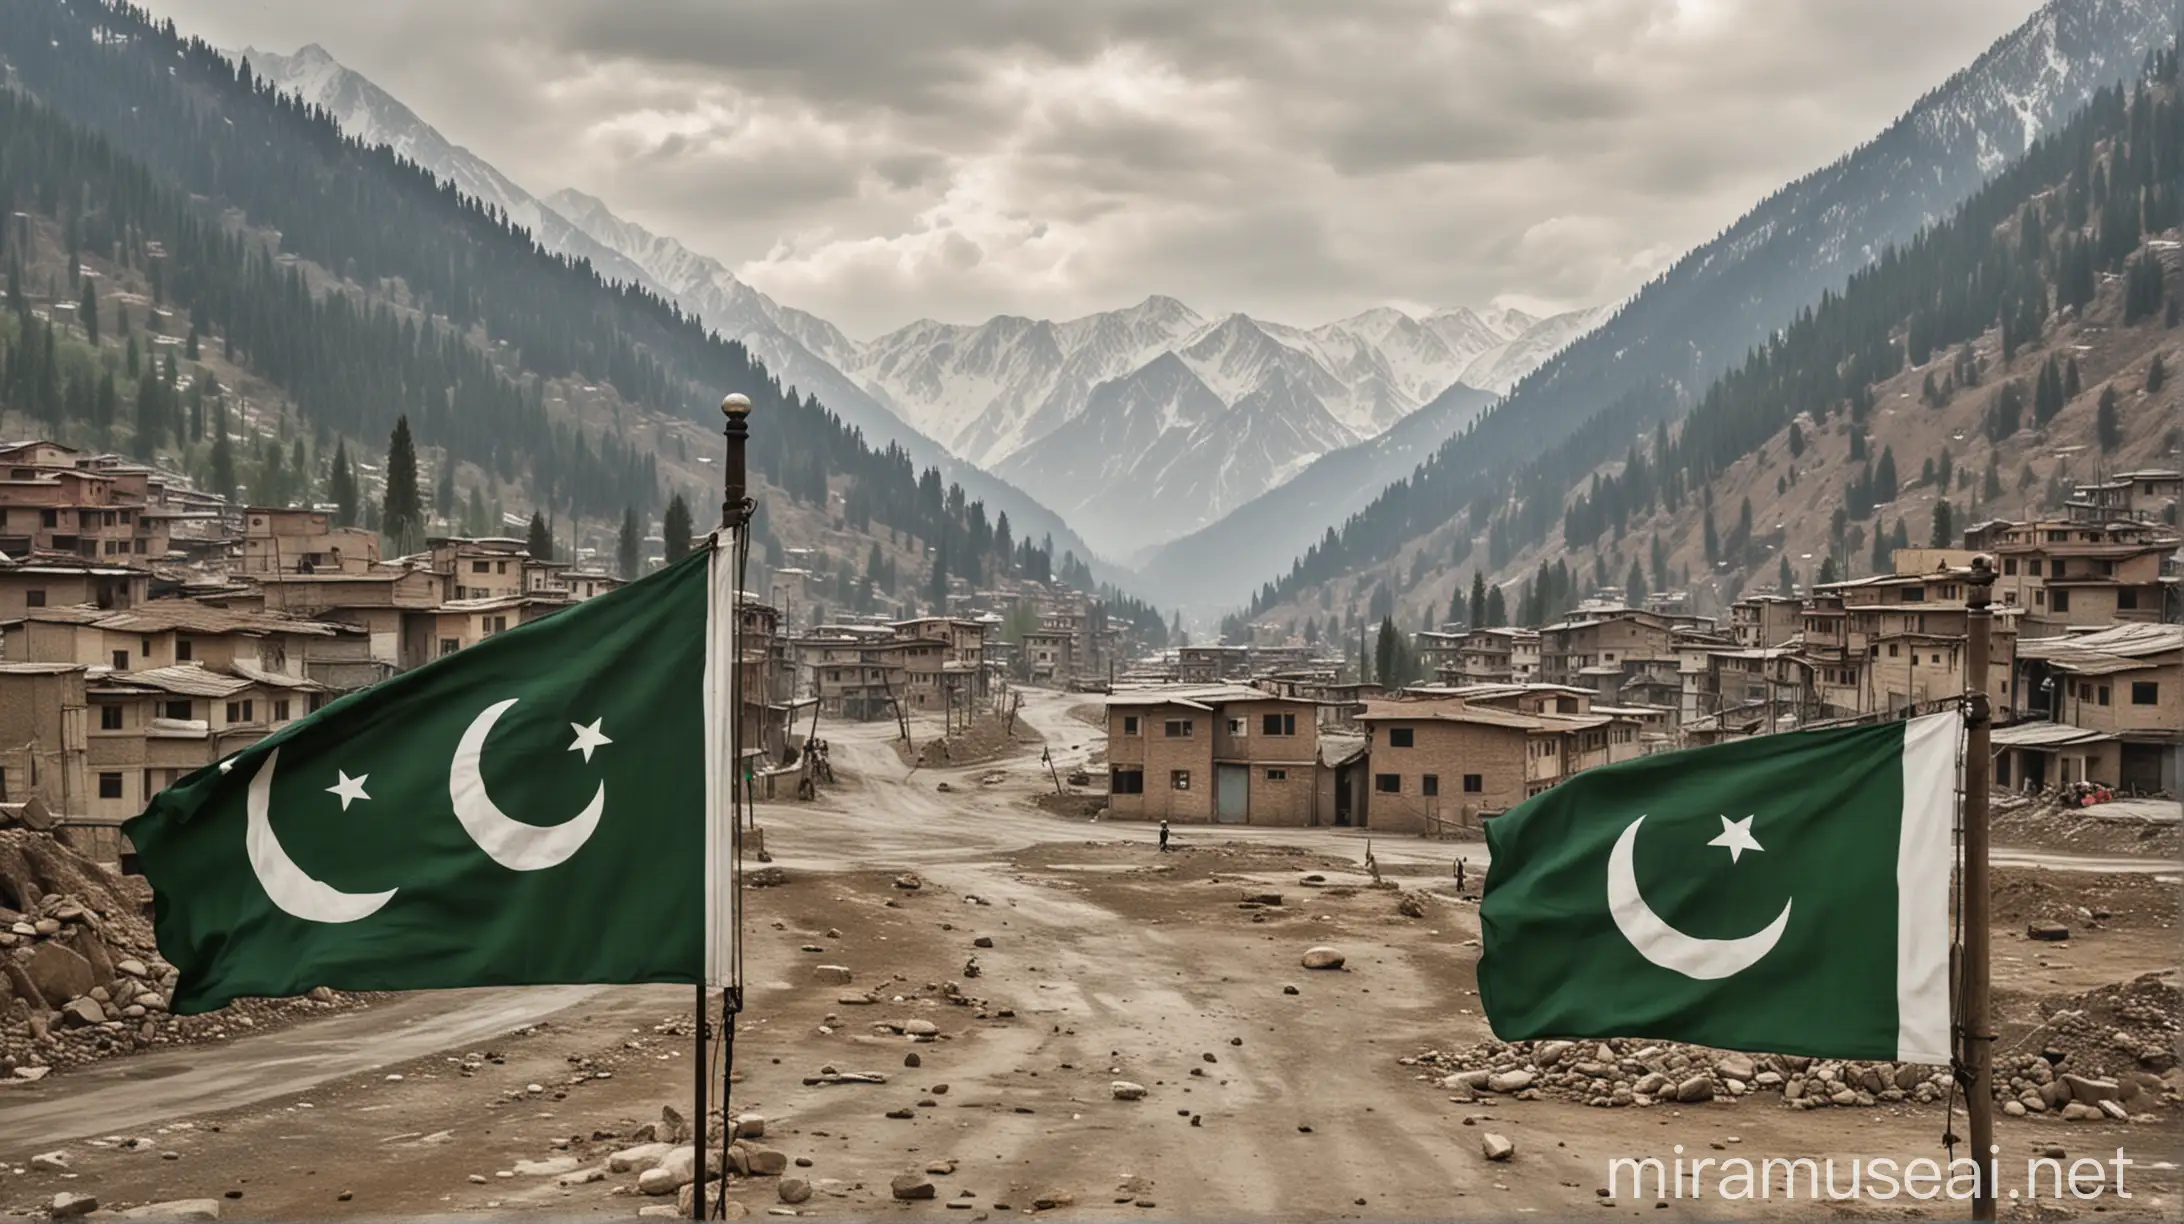 Pakistan Occupied Kashmir Pakistani Flag Against Mountainous Landscape